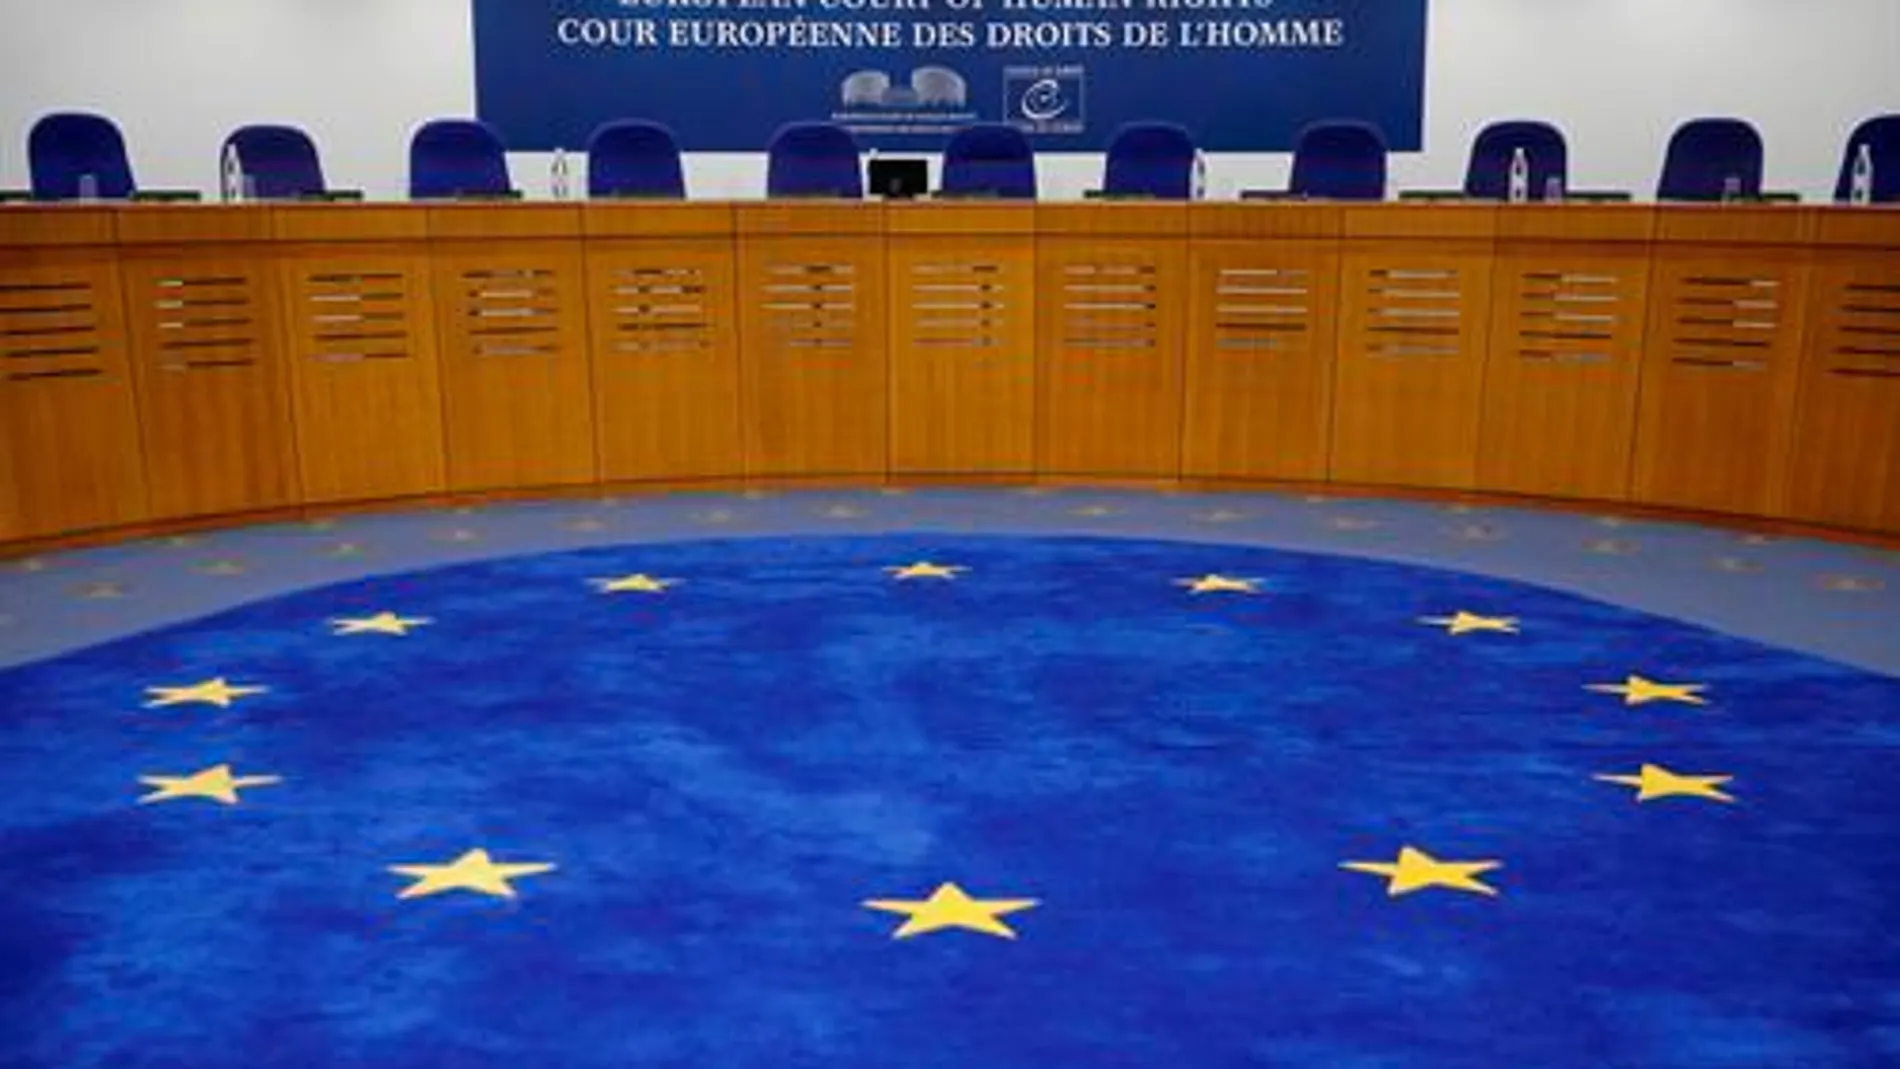 Sala del Tribunal Europeo de Derechos Humanos (TEDH) en Estrasburgo